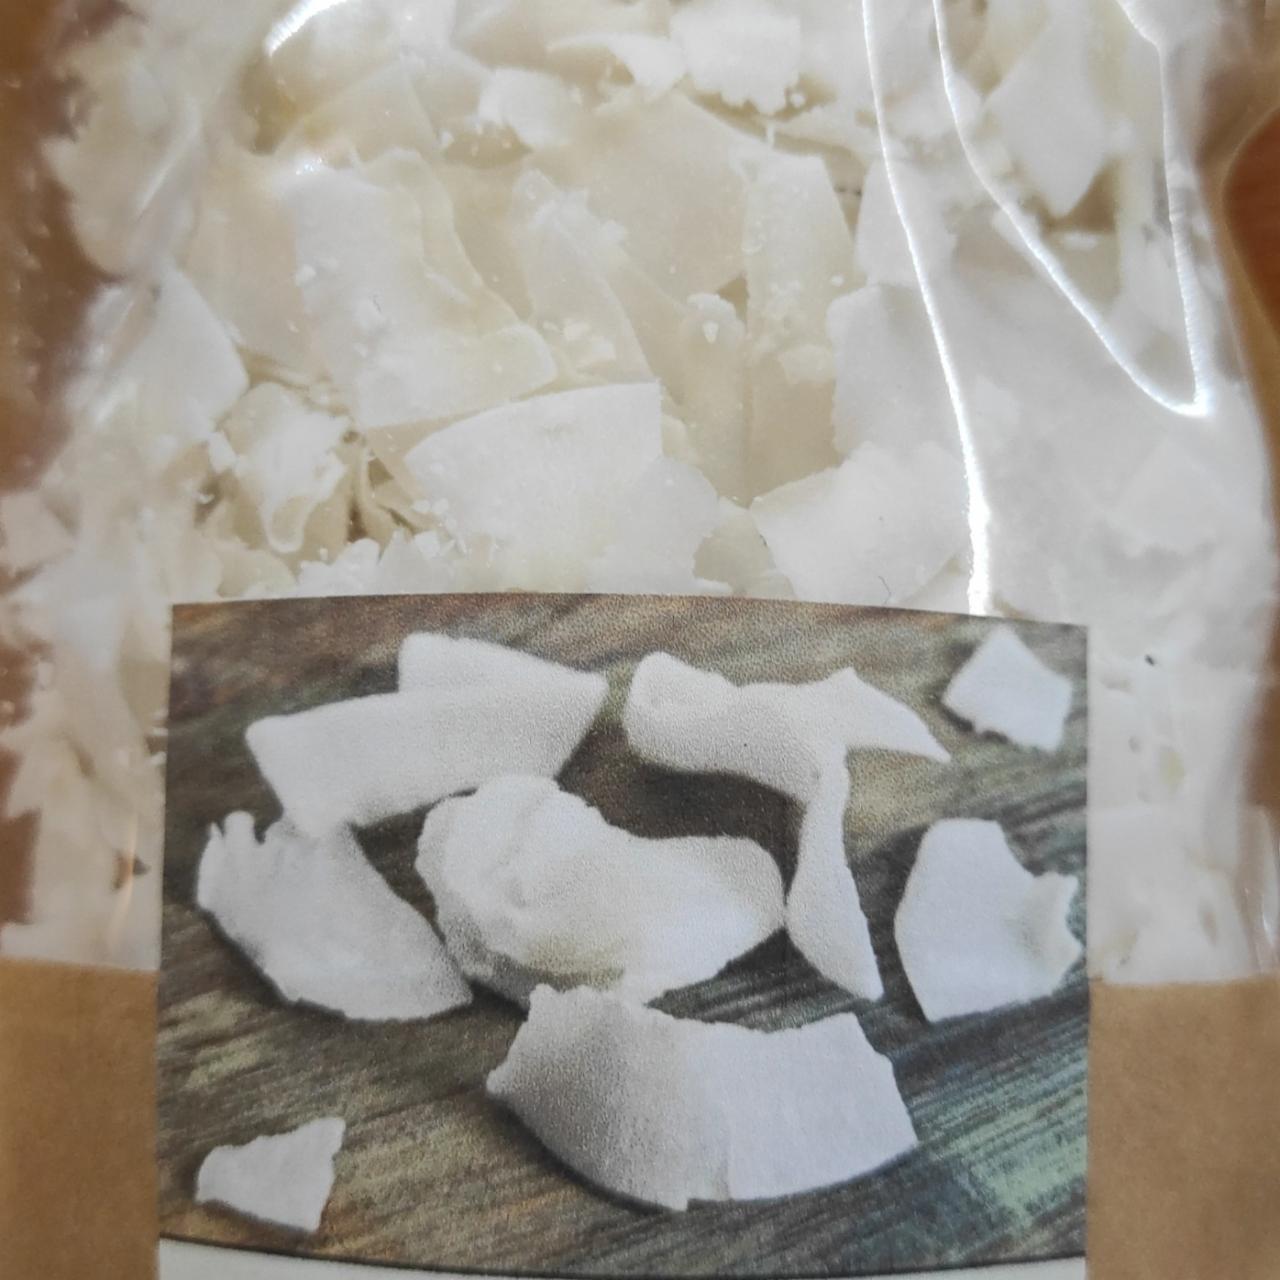 Fotografie - Kokosový chips Raw Organický Toppas food